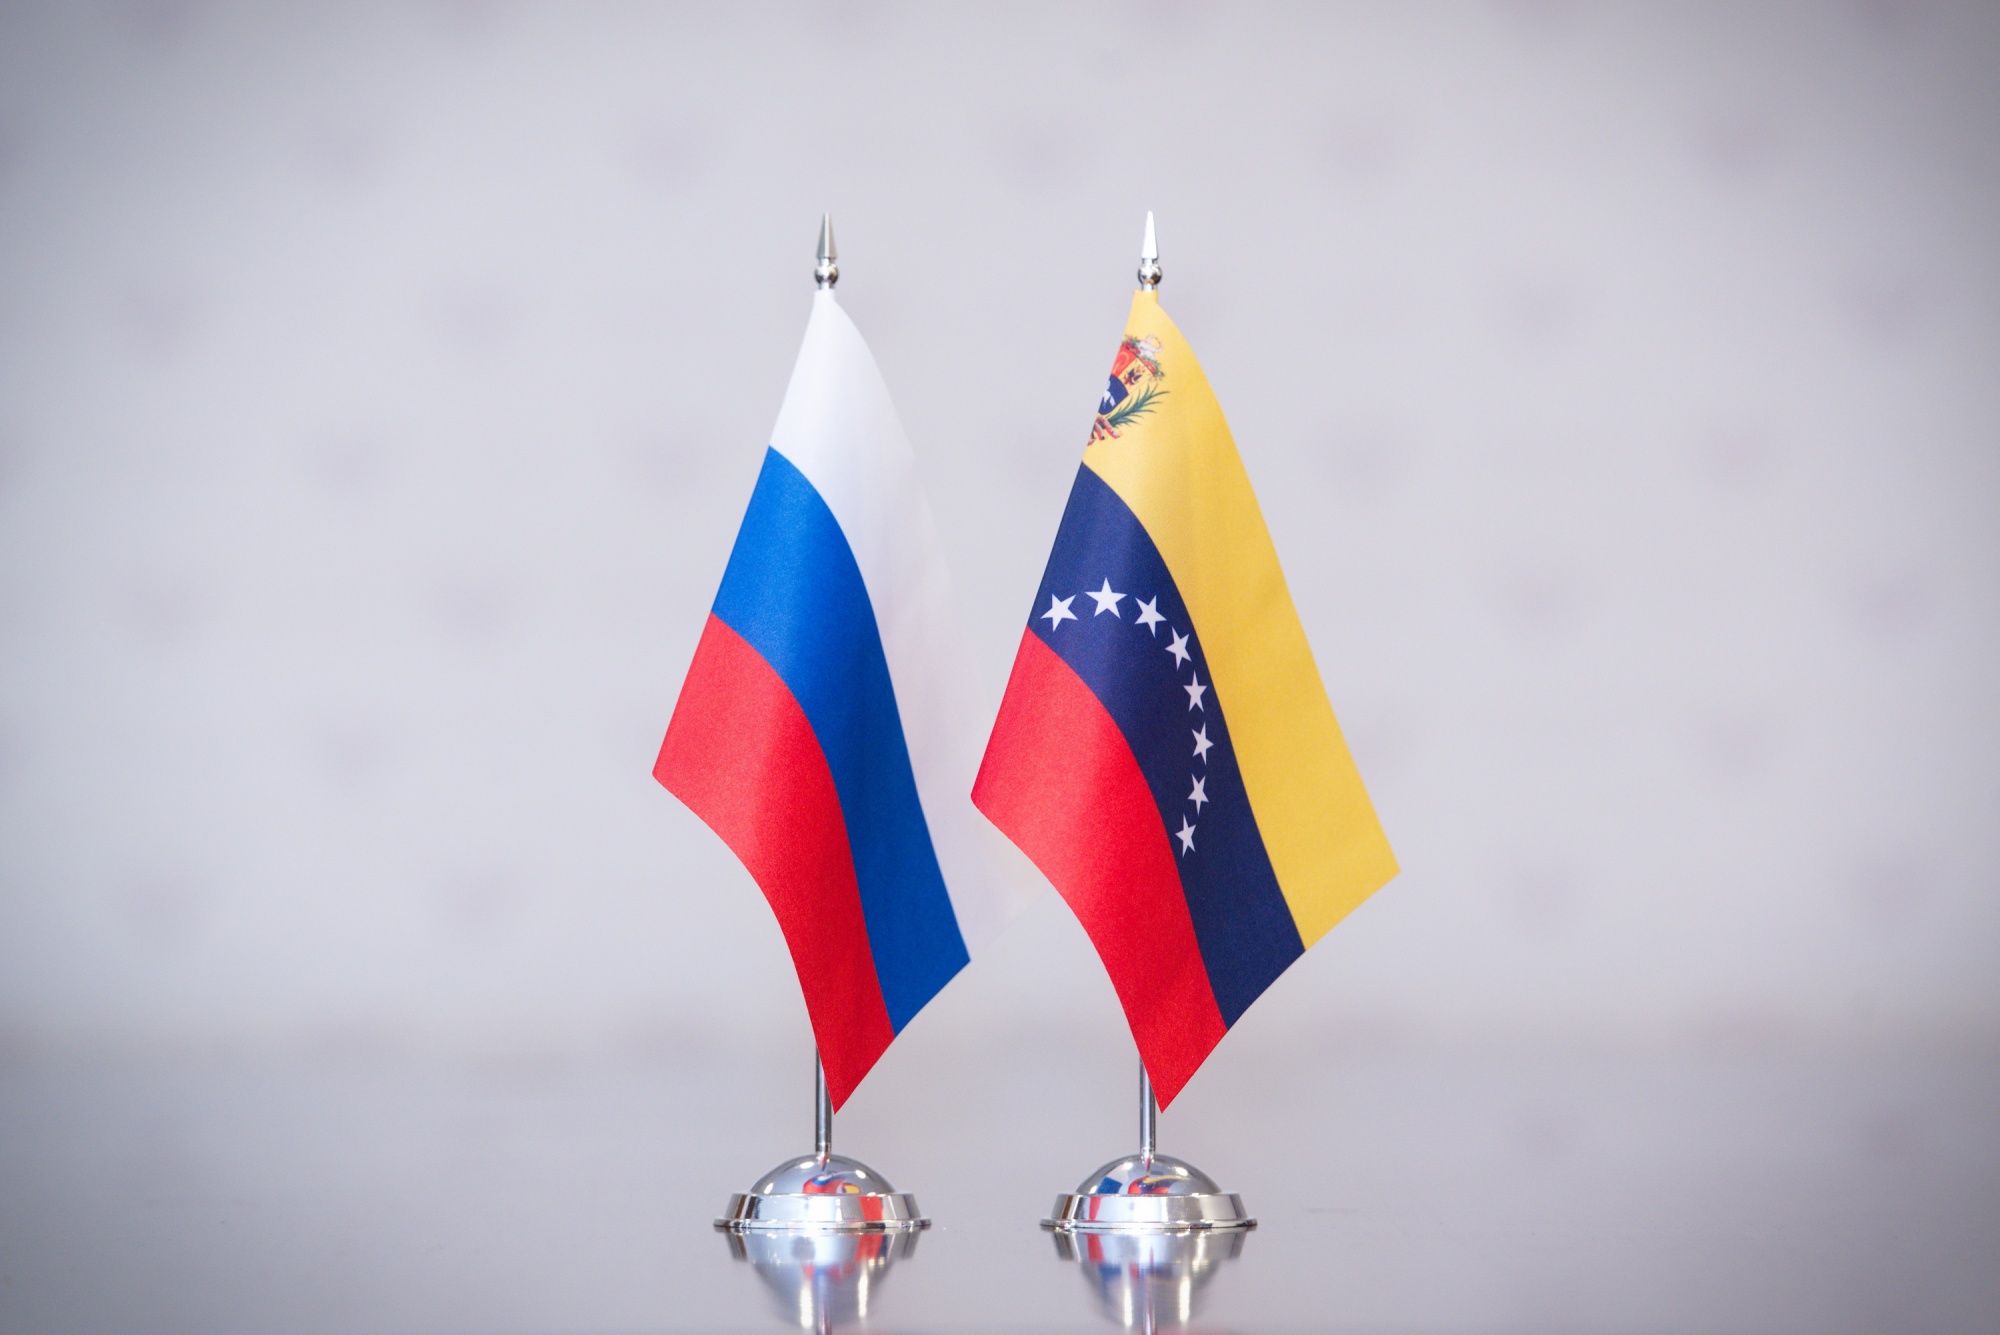 Подписан меморандум о сотрудничестве между Минпросвещения России и Министерством народной власти по образованию Венесуэлы.